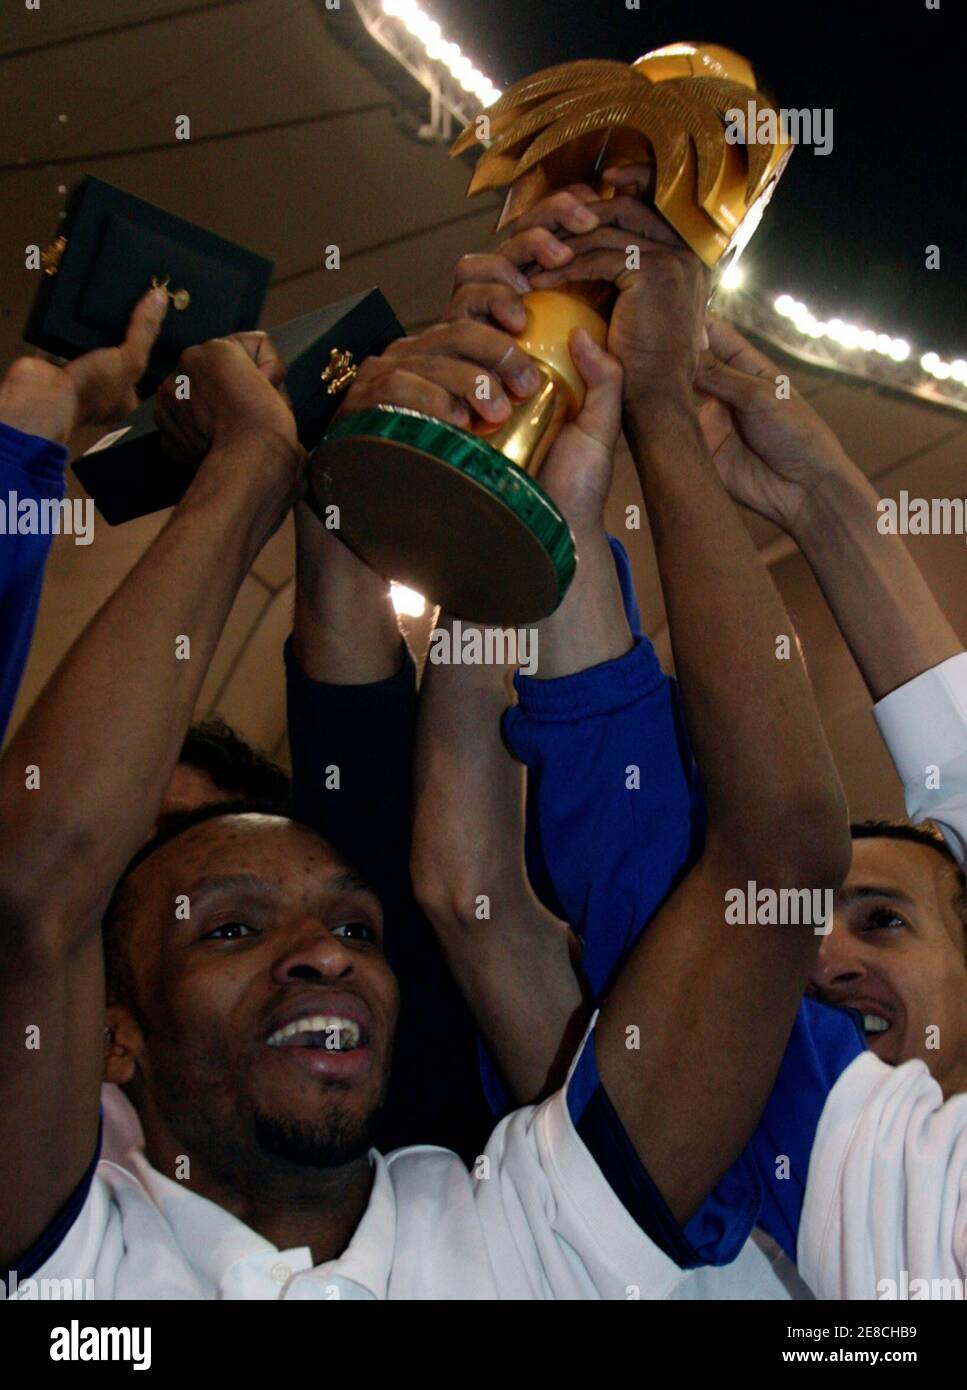 I giocatori di al Hilal festeggiano con il trofeo Saudi Crown Prince Cup dopo la vittoria su al Etafaq nella partita di calcio finale a Riyadh il 7 marzo 2008. REUTERS/Fahad Shadeed (ARABIA SAUDITA) Foto Stock